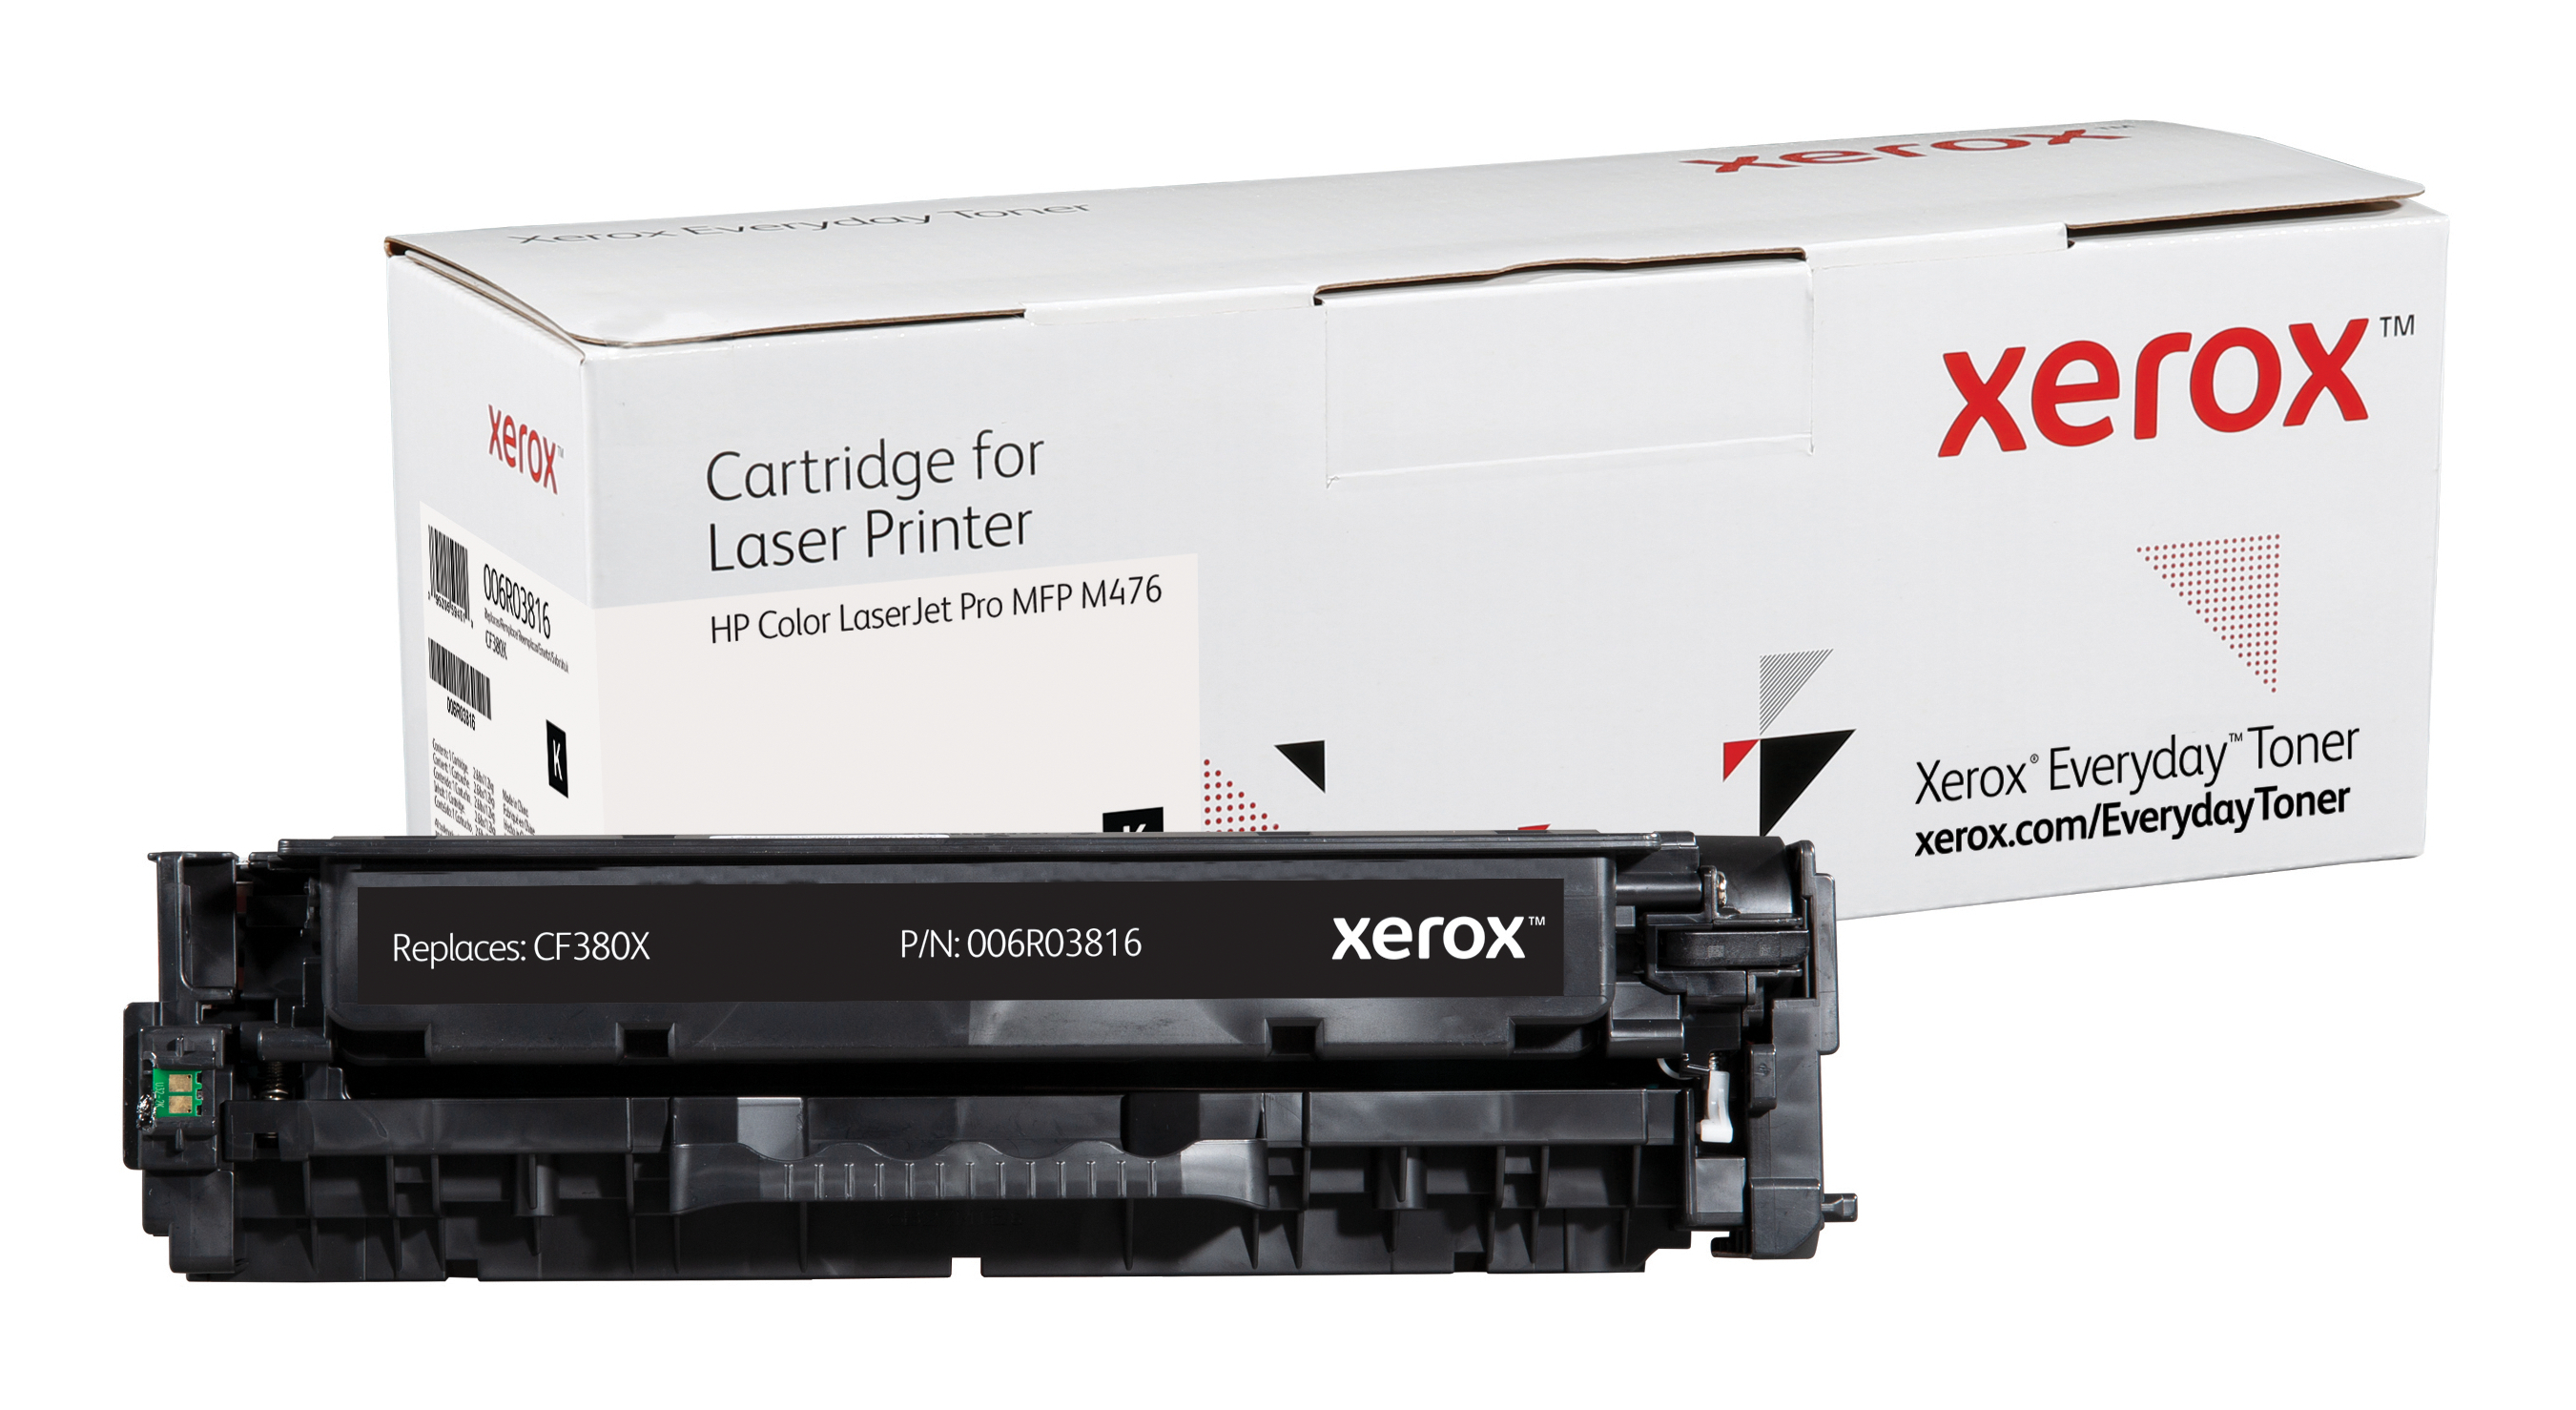 Xerox Everyday Zwart Toner vervangt de HP 312X (CF380X)